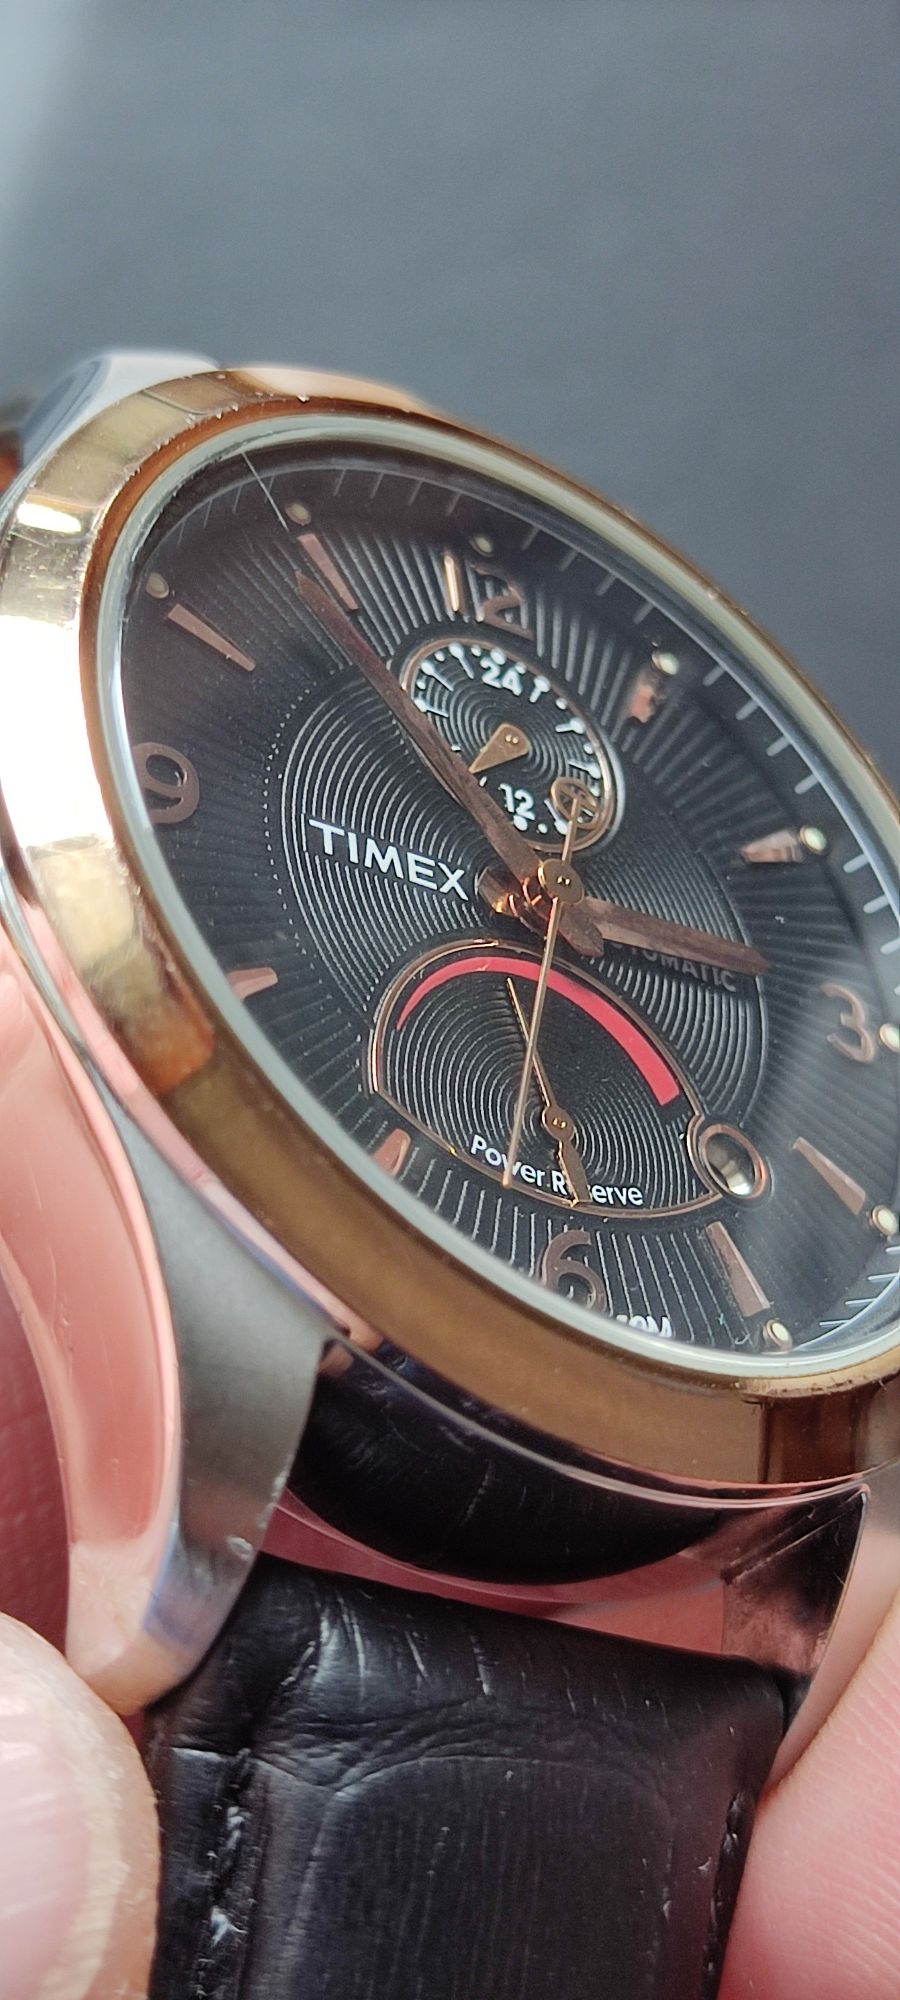 Relógio Timex automático power Reserve. Não é Seiko, Bulova, Citizen